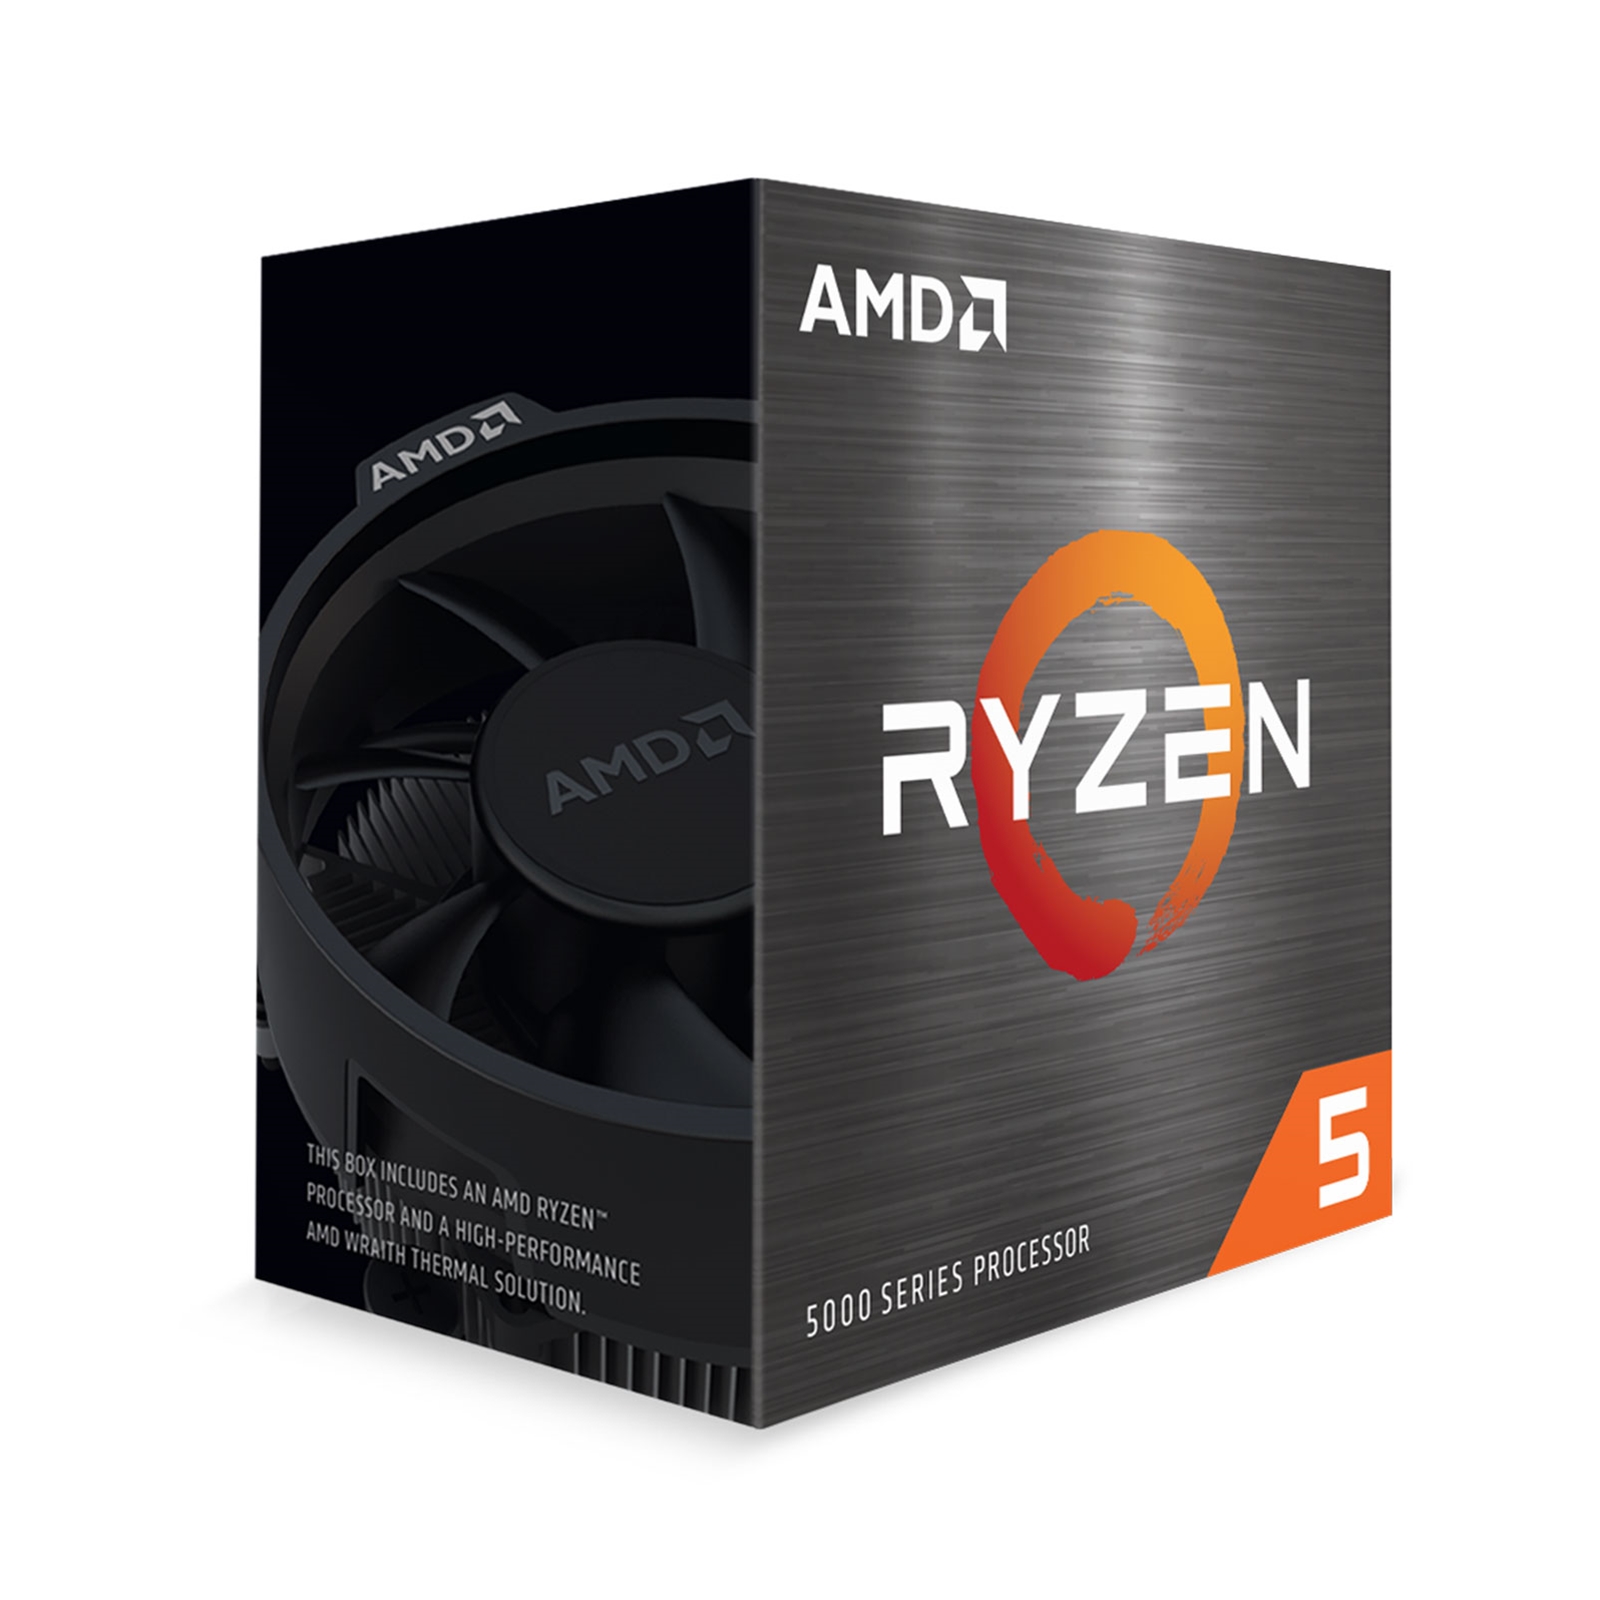 AMD Ryzen 5 5600 3.5GHz 6 Core AM4 Processor